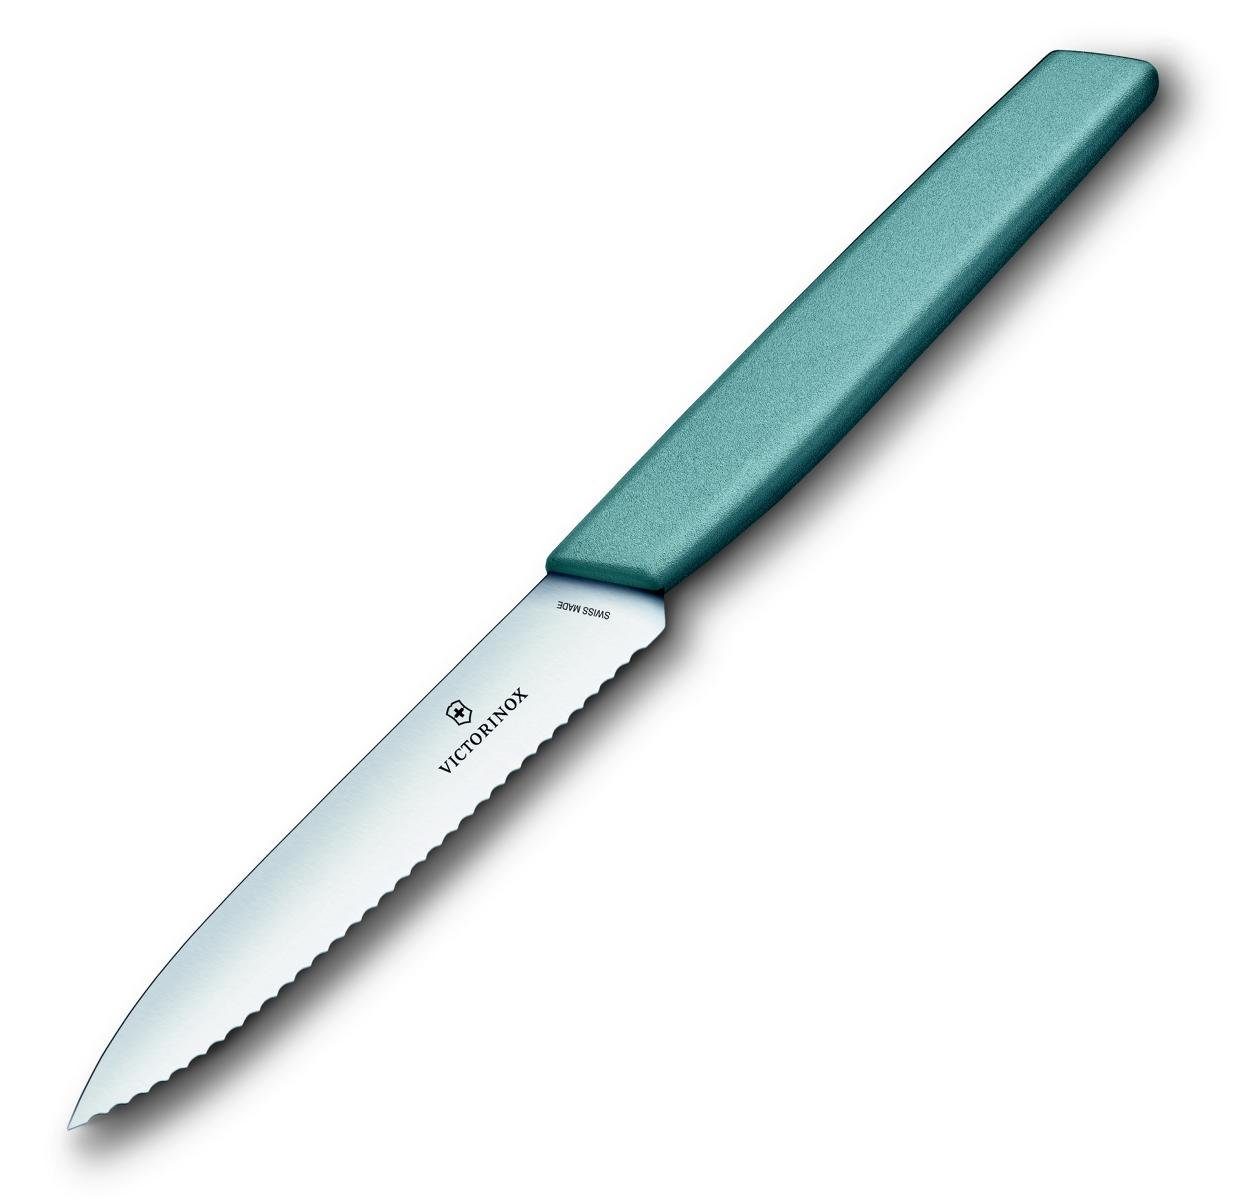 wavy, Victorinox Paring knife, Taschenmesser arona 10 cm,